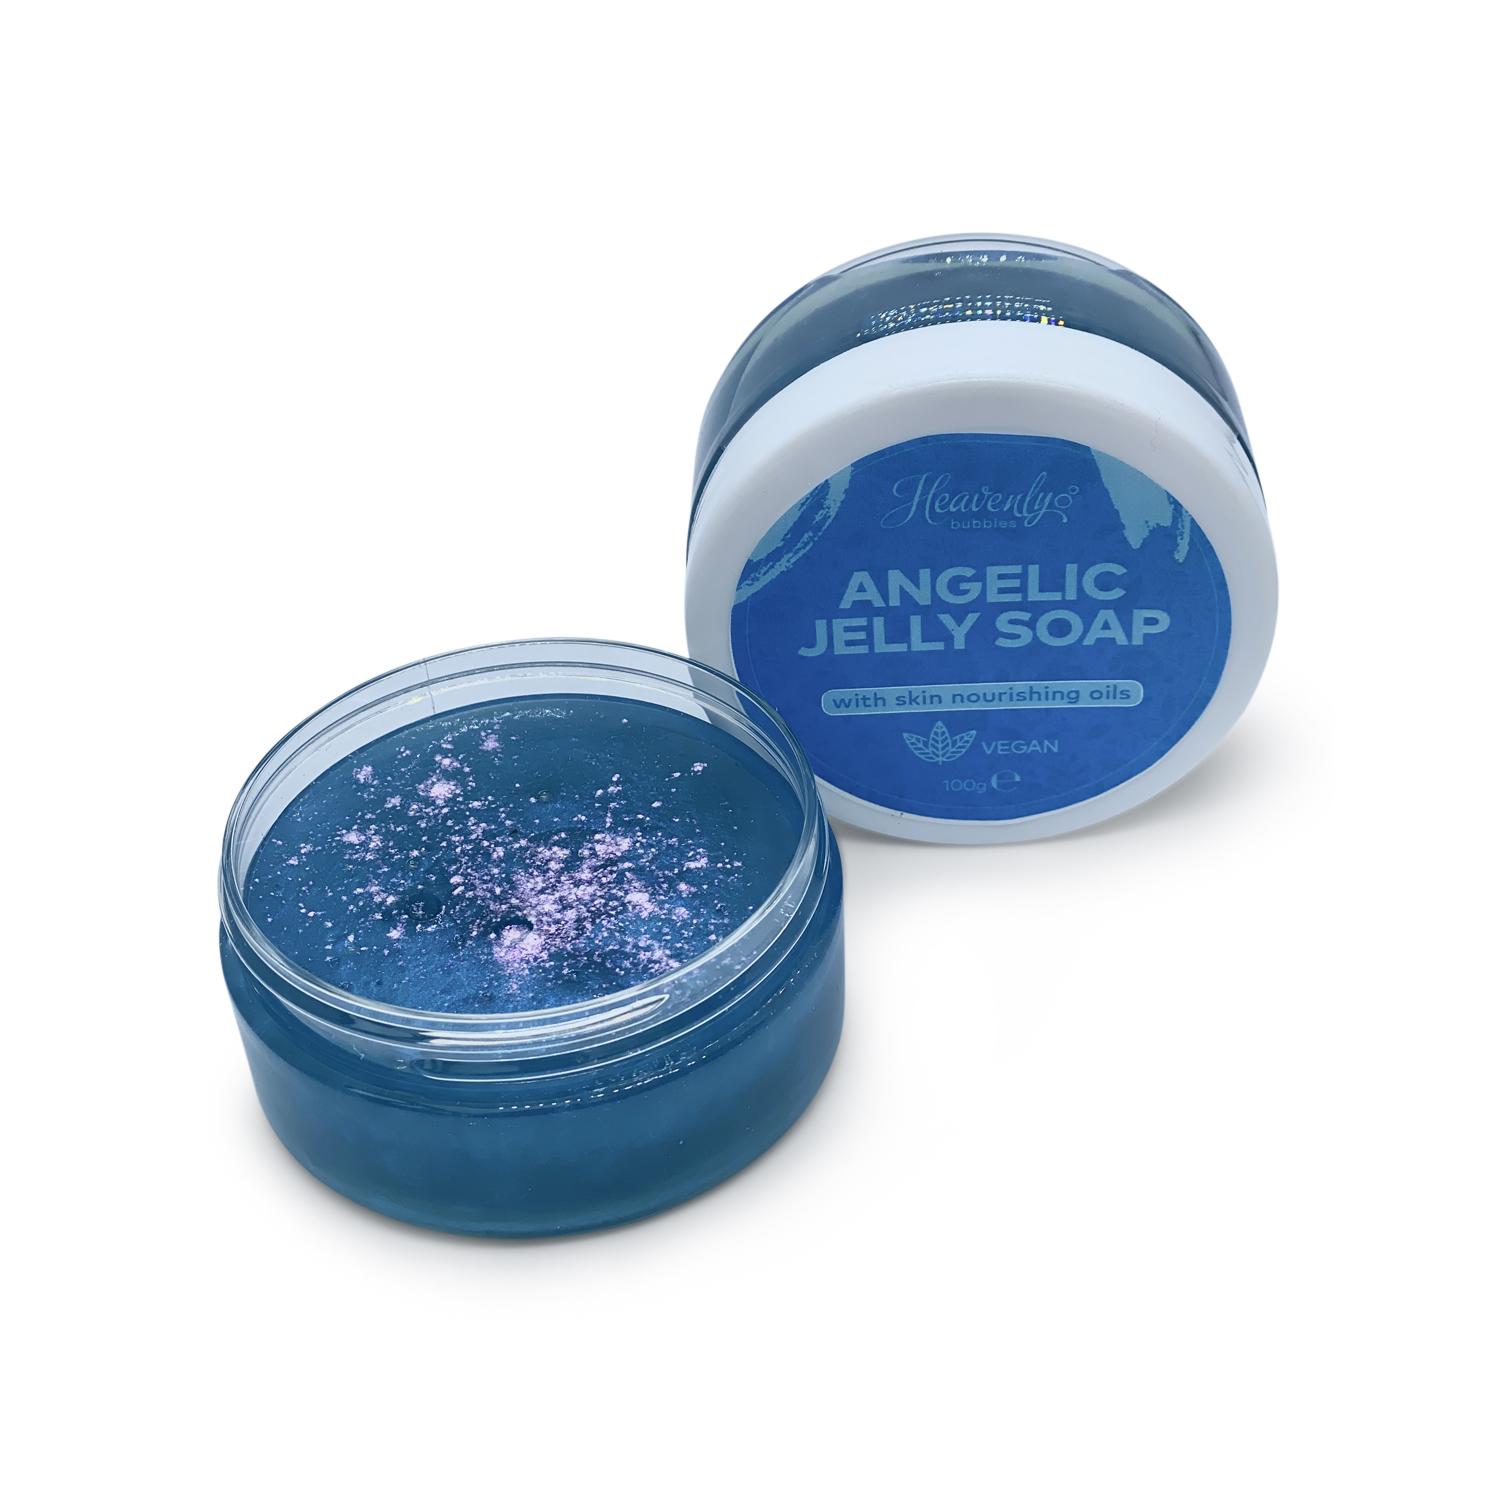 Handmade Angelic Jelly Soap | Heavenly Bubbles